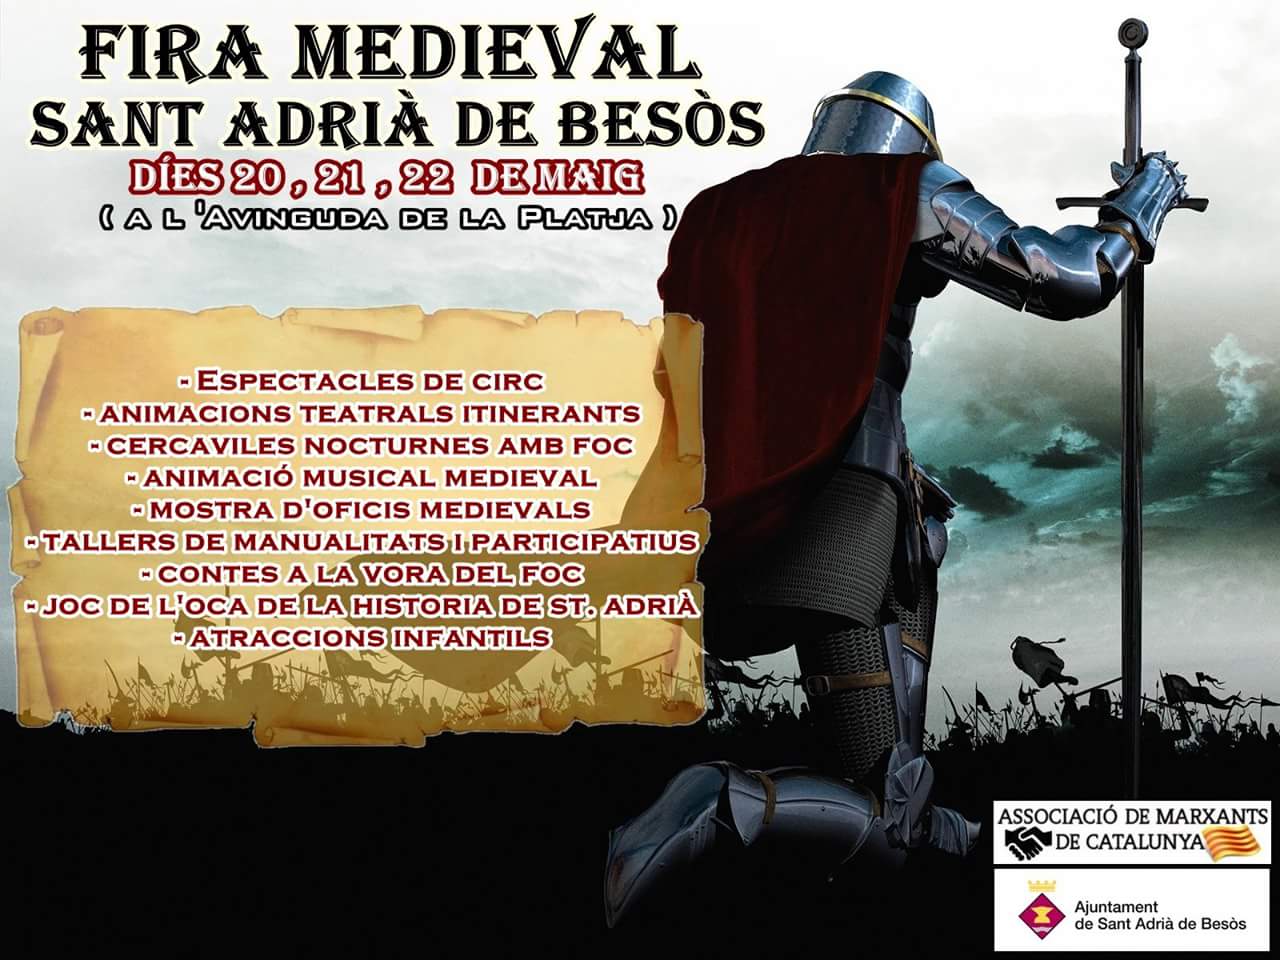 Feria medievalen San Adria del Besos, Barcelona 20 al 22 de Mayo del 2016